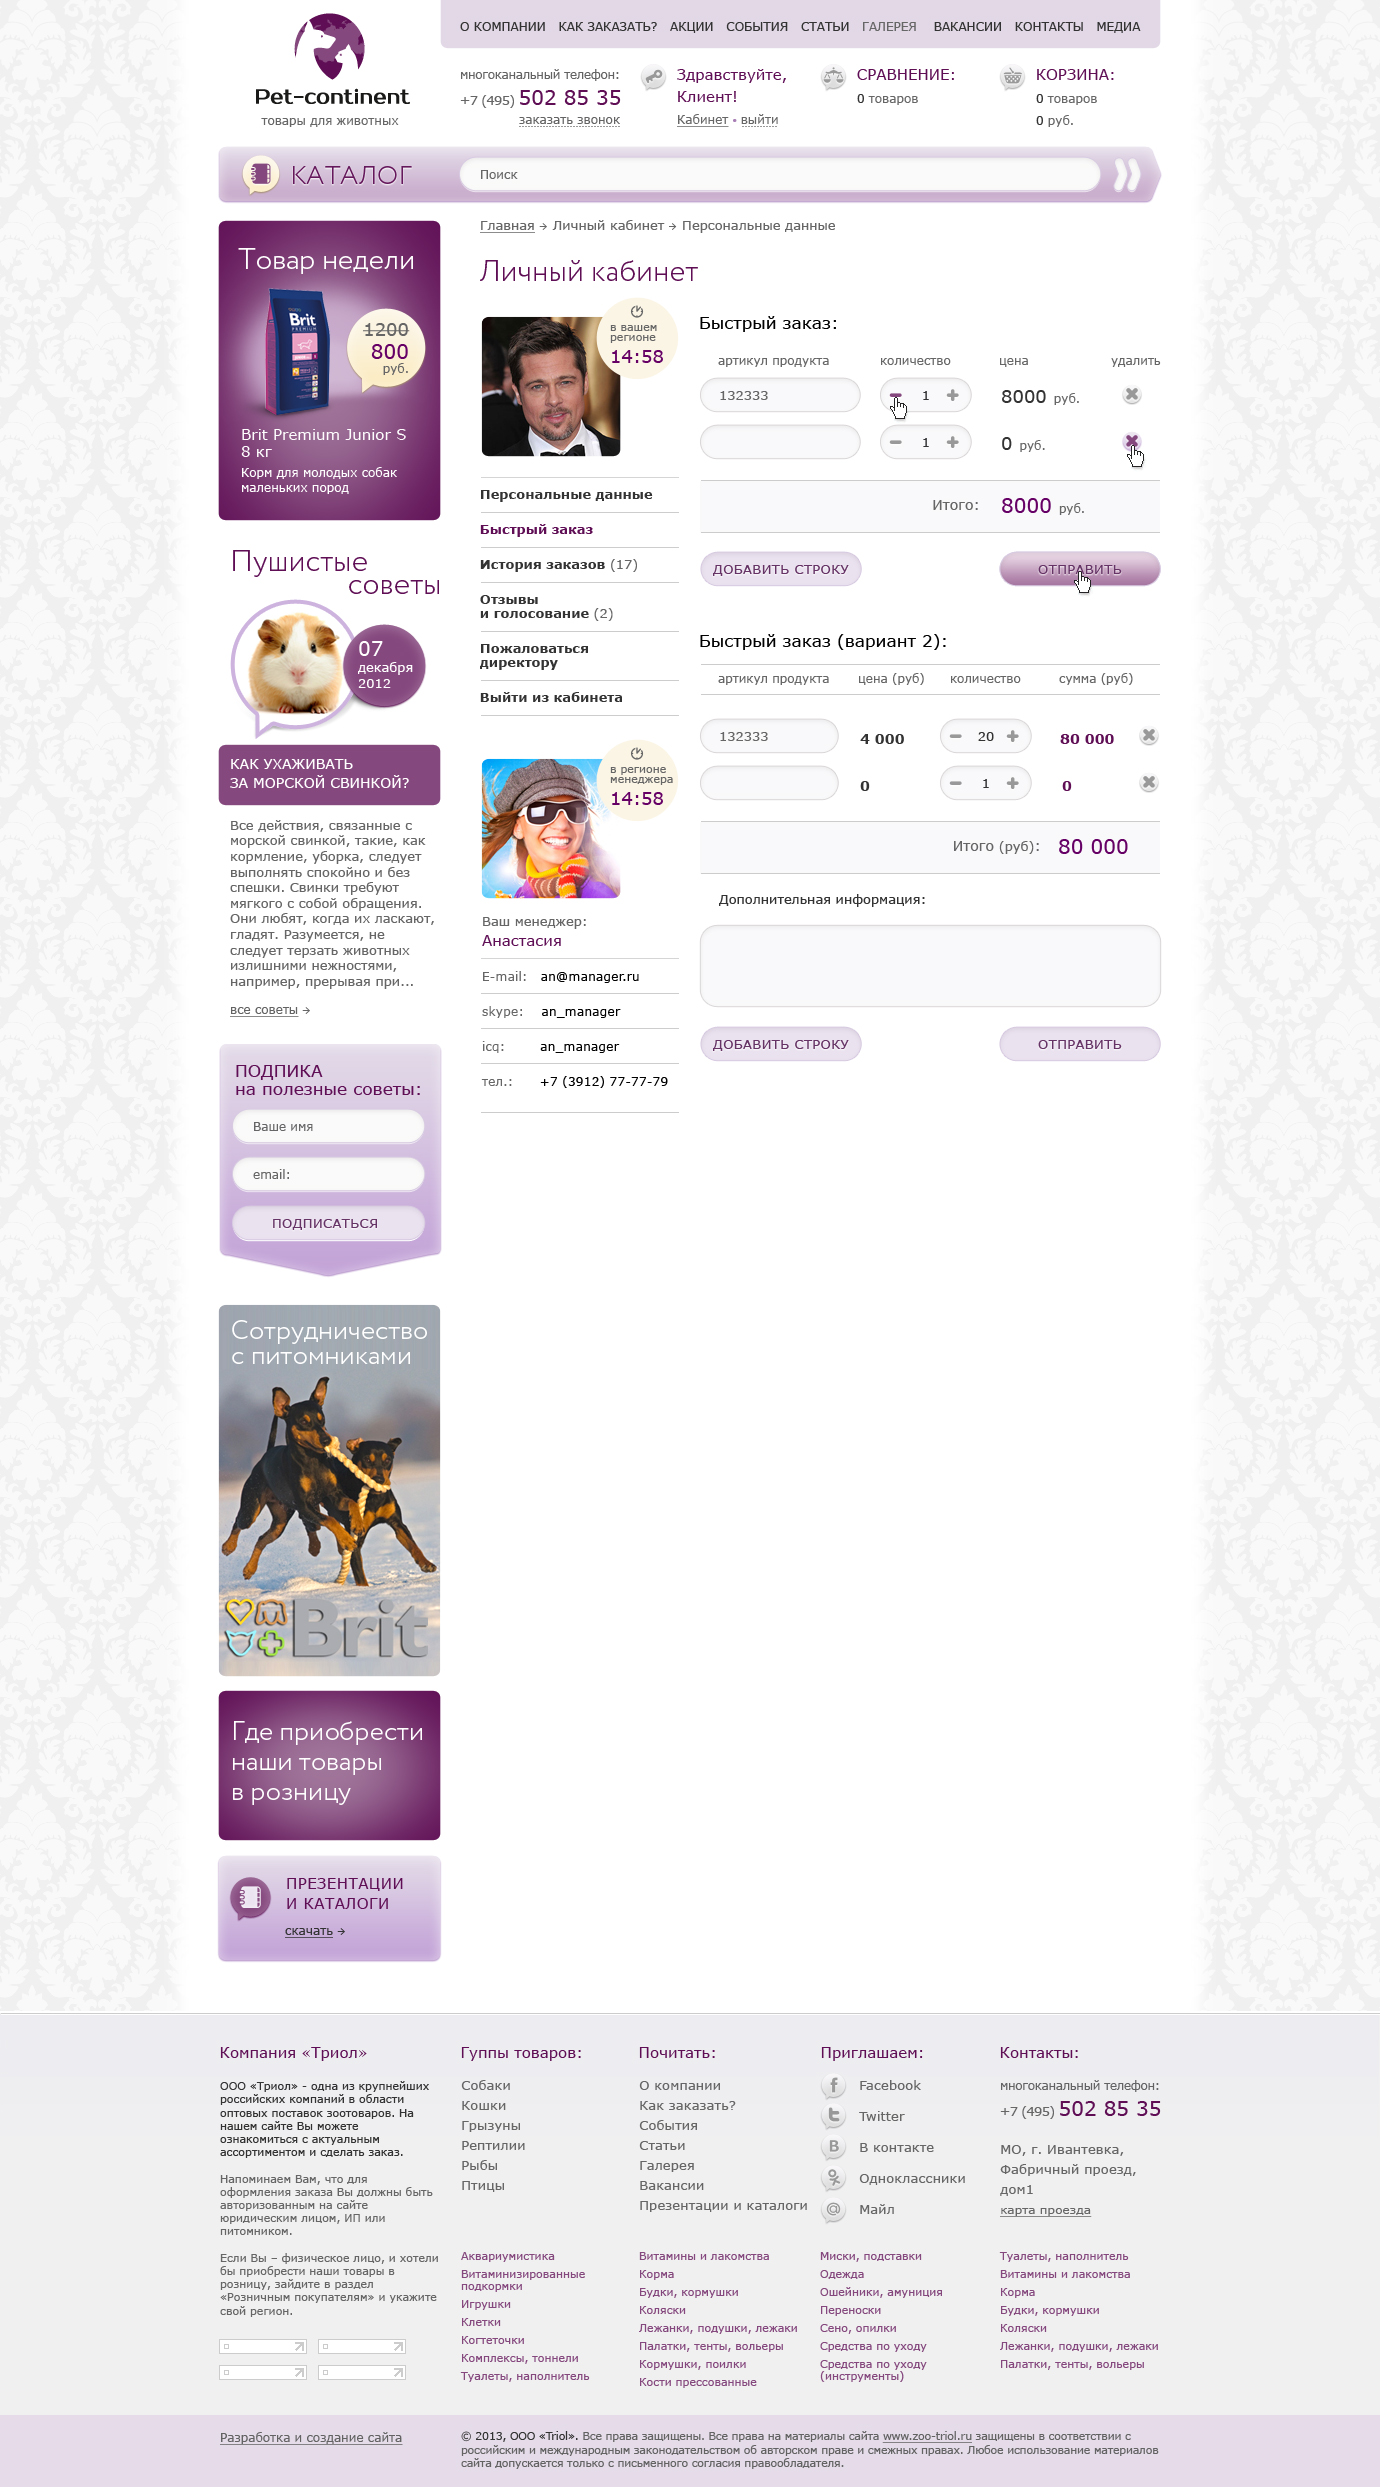 Дизайн интернет-магазина «Pet-continent» магазин товаров для животных - Личный кабинет, Быстрый заказ